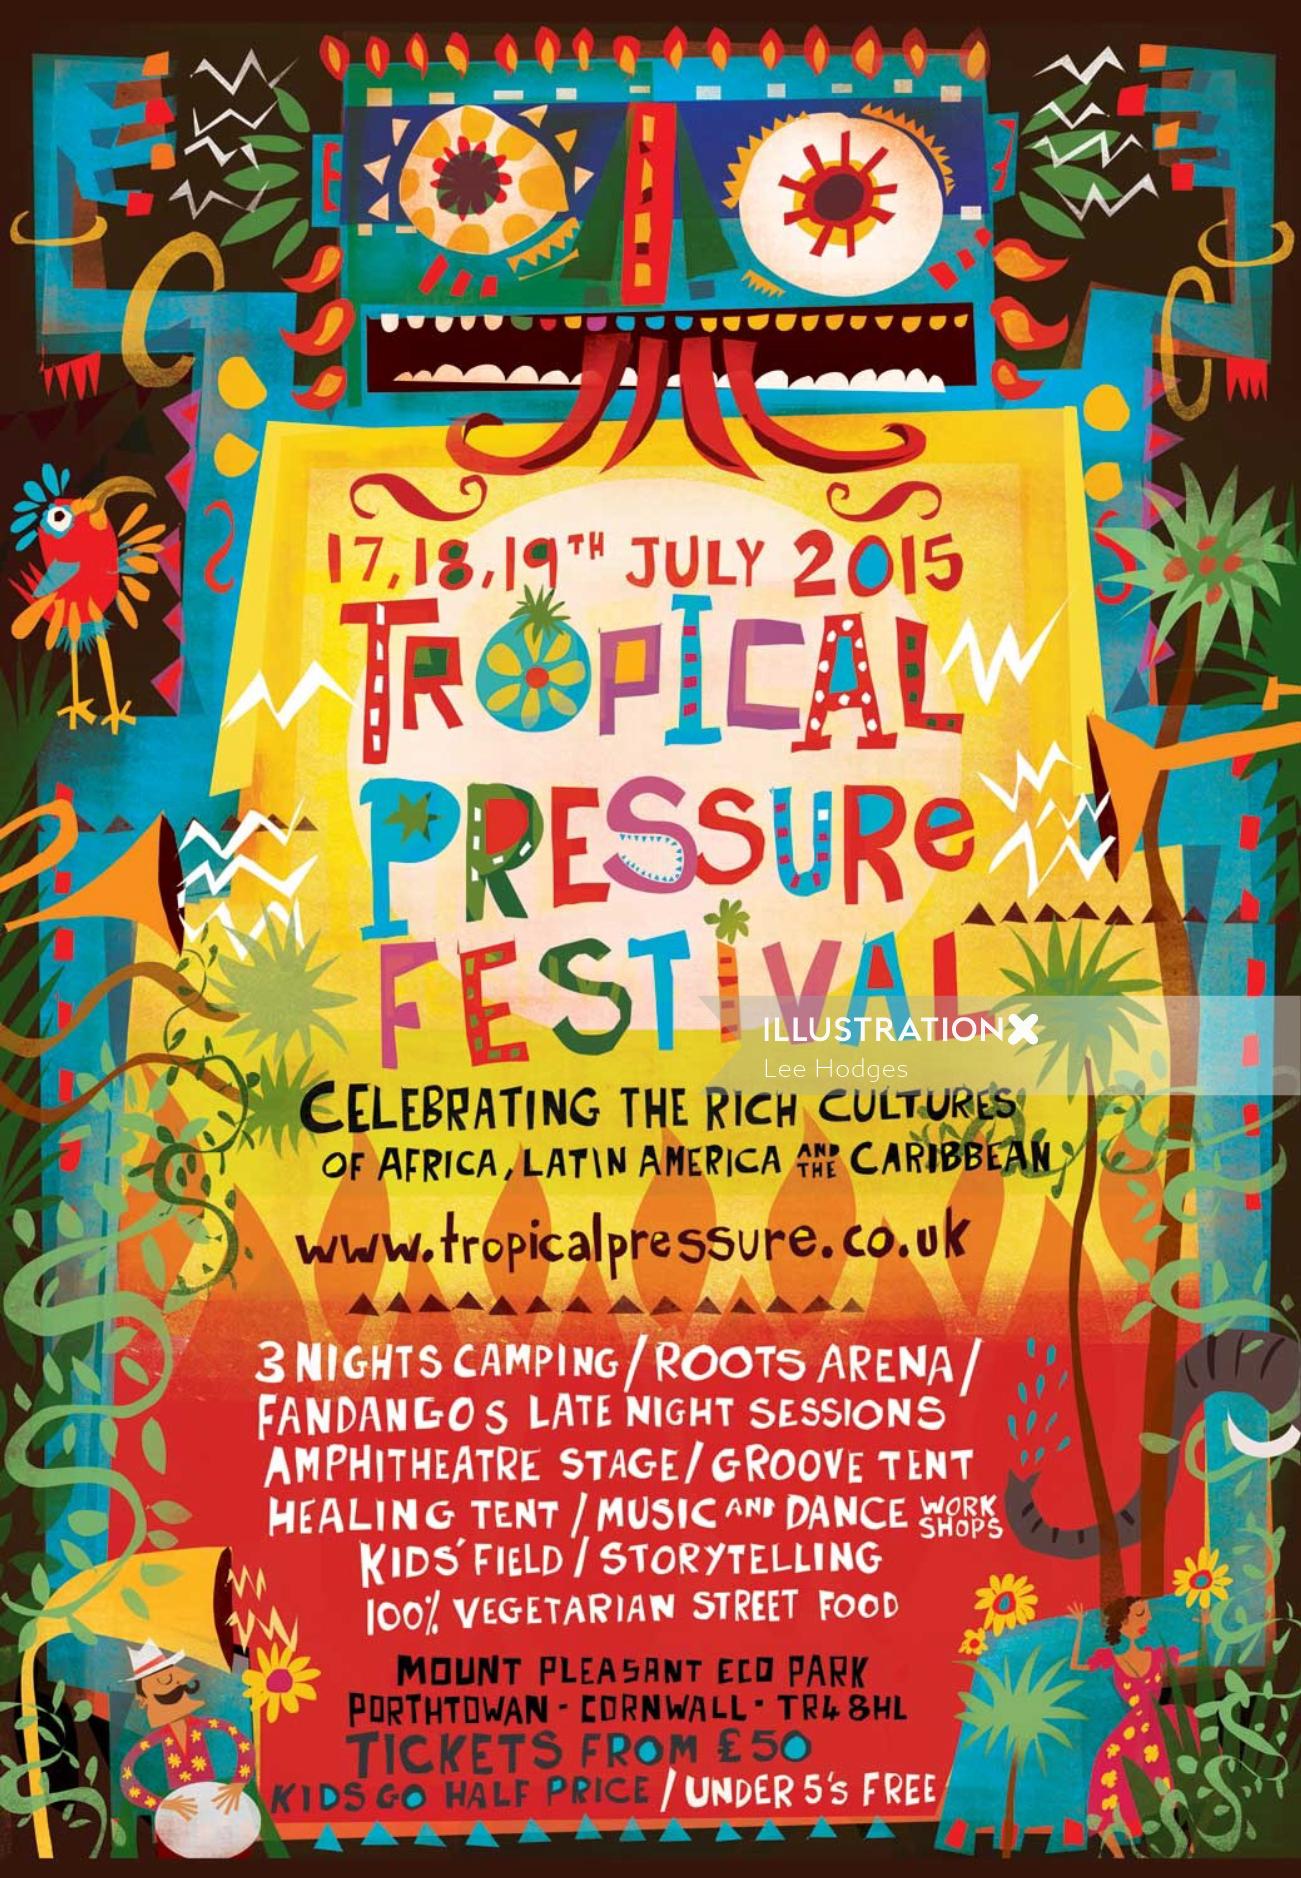 Poster art for Tropical pressure festival